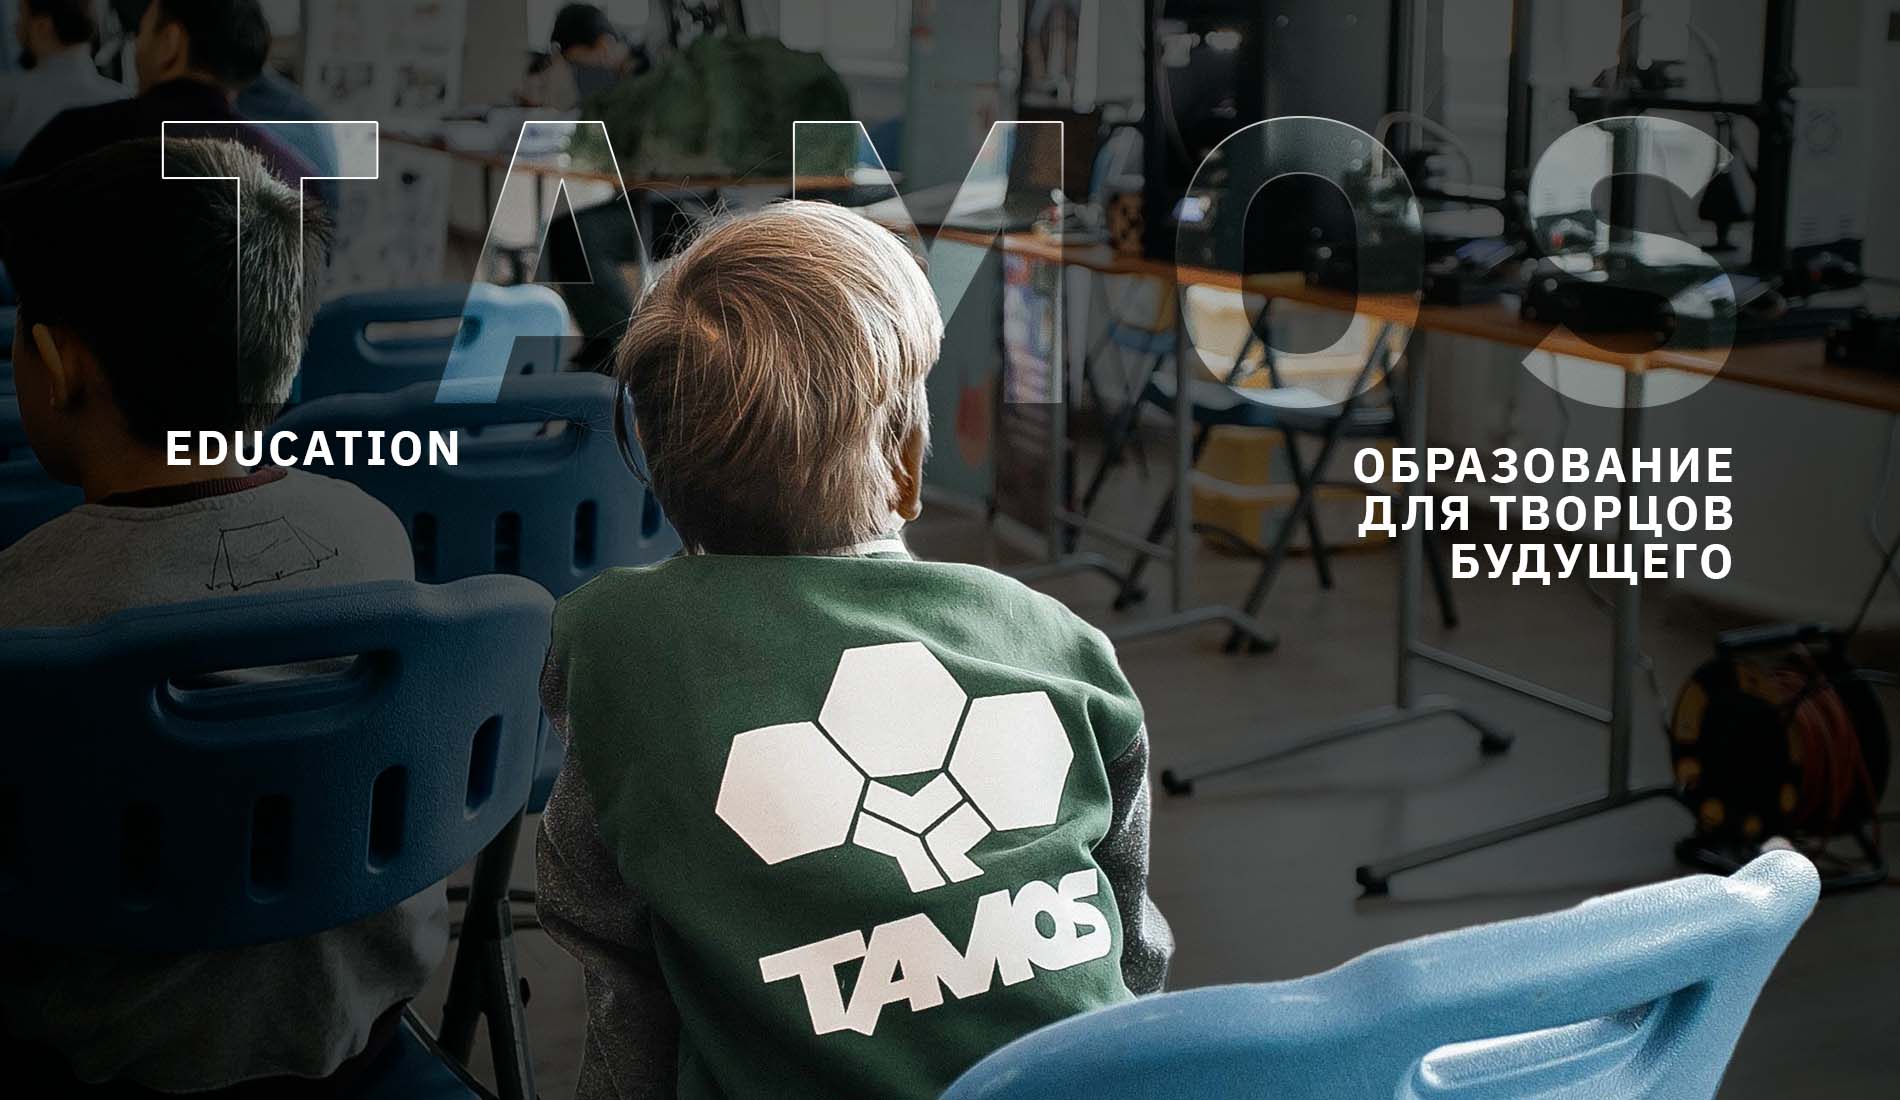 TAMOS Education – образование для творцов будущего